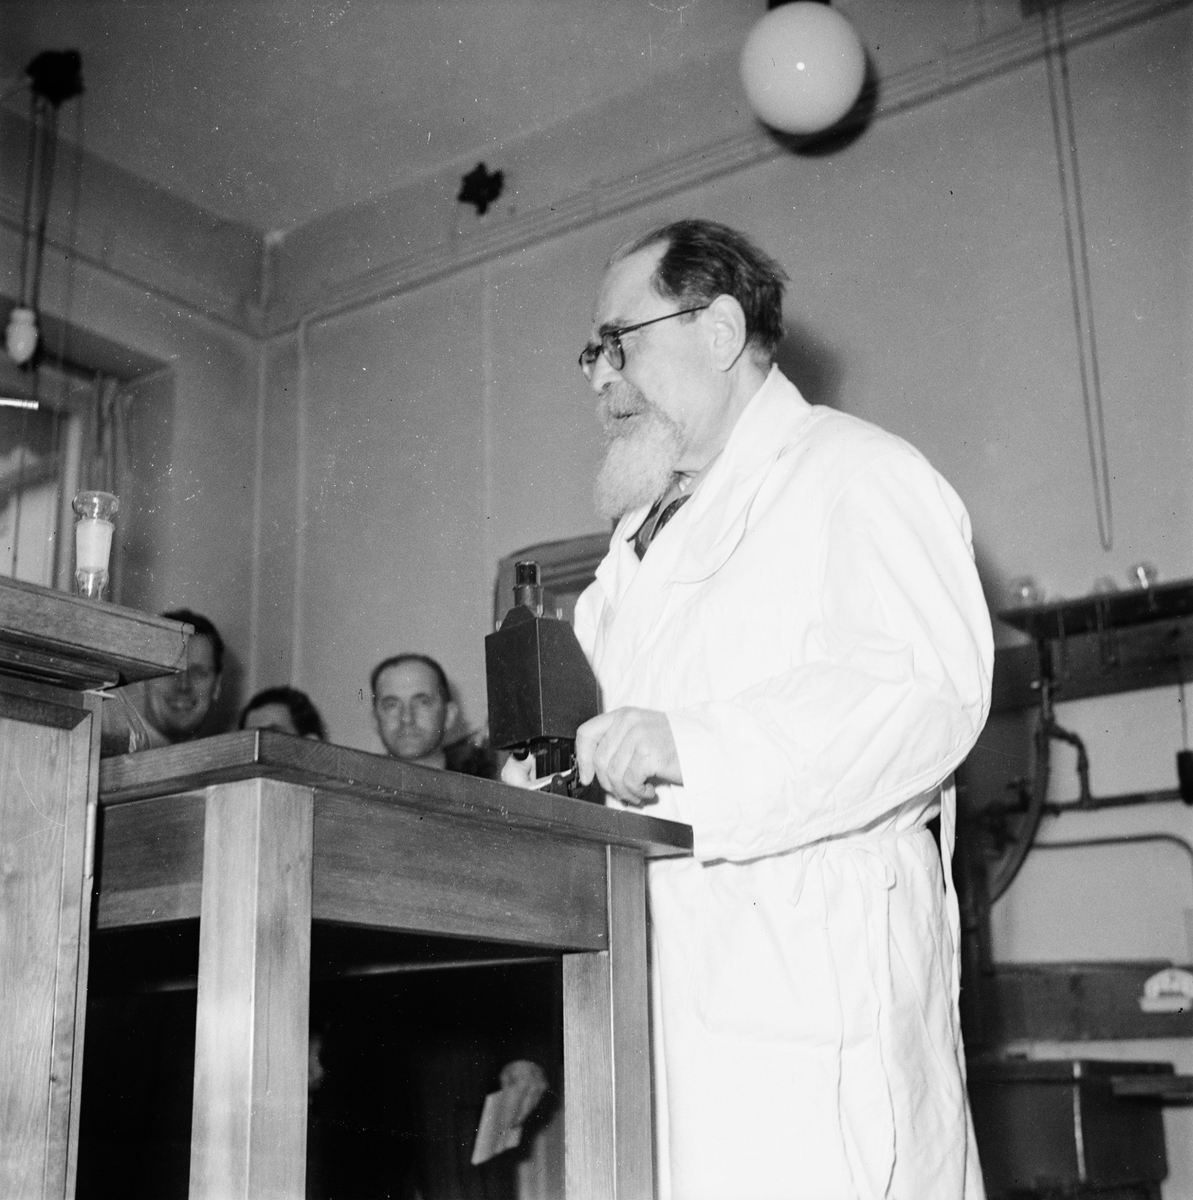 Pressvisning, man i laboratorium, Ultuna, Uppsala 1947